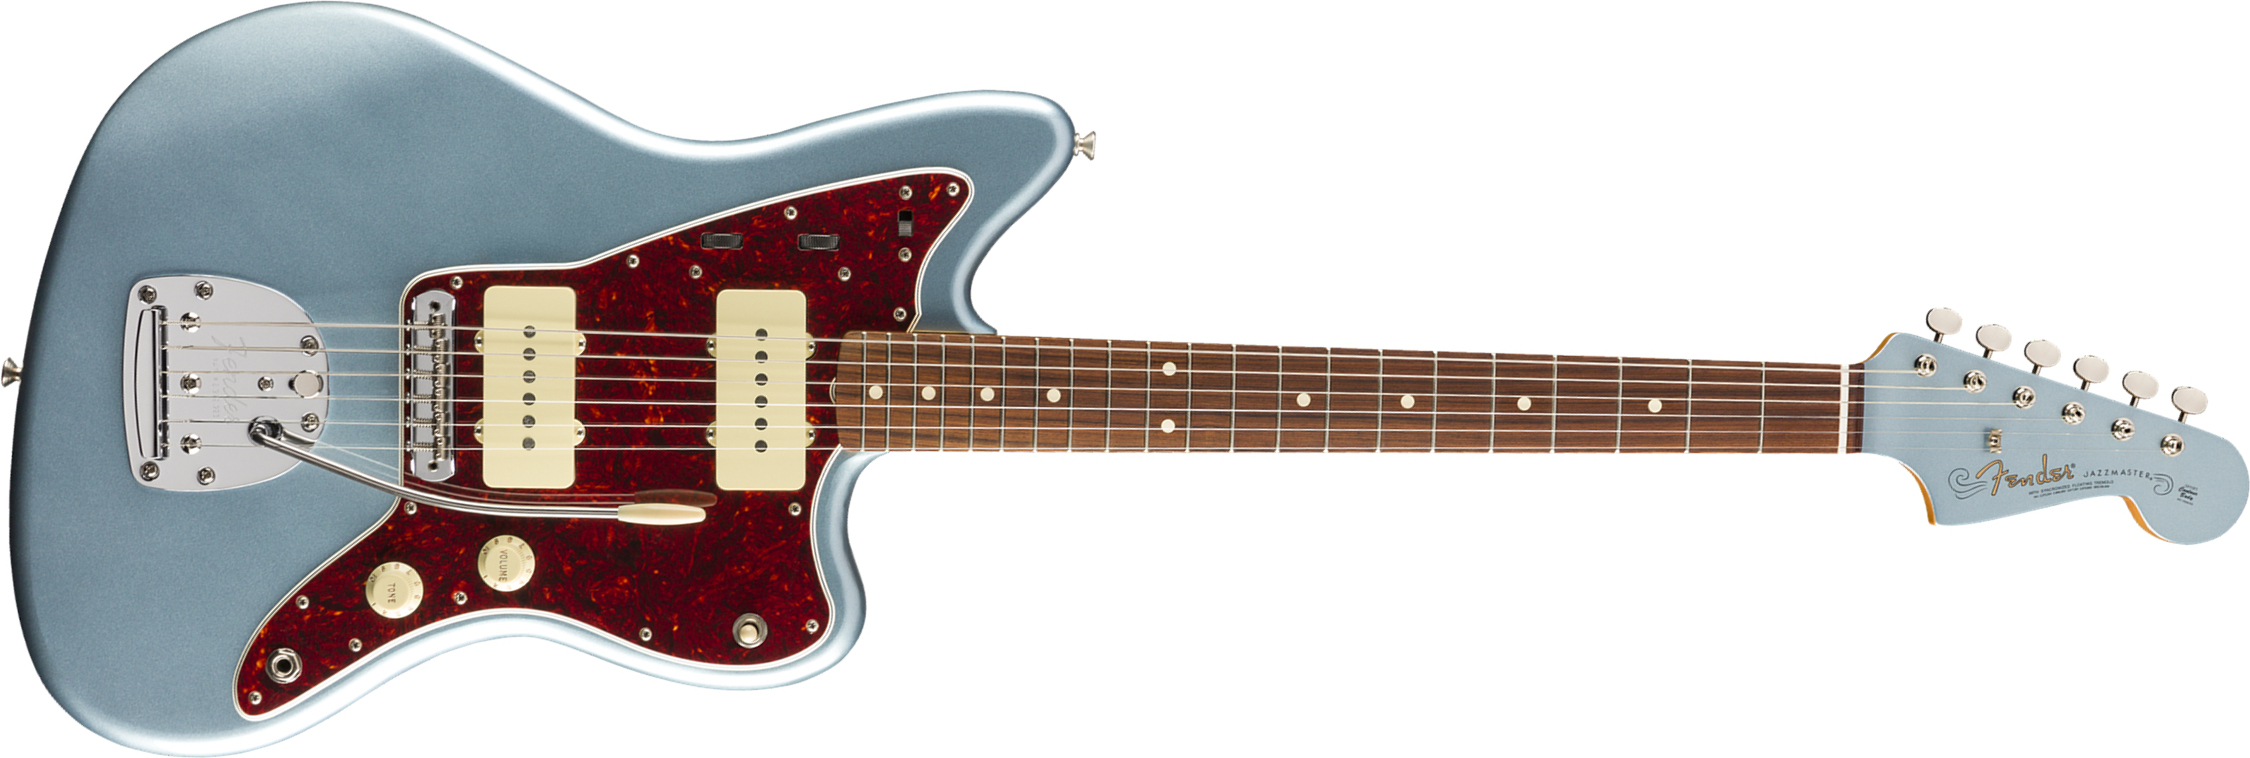 Fender Jazzmaster 60s Vintera Vintage Mex Pf - Ice Blue Metallic - Retro-rock elektrische gitaar - Main picture